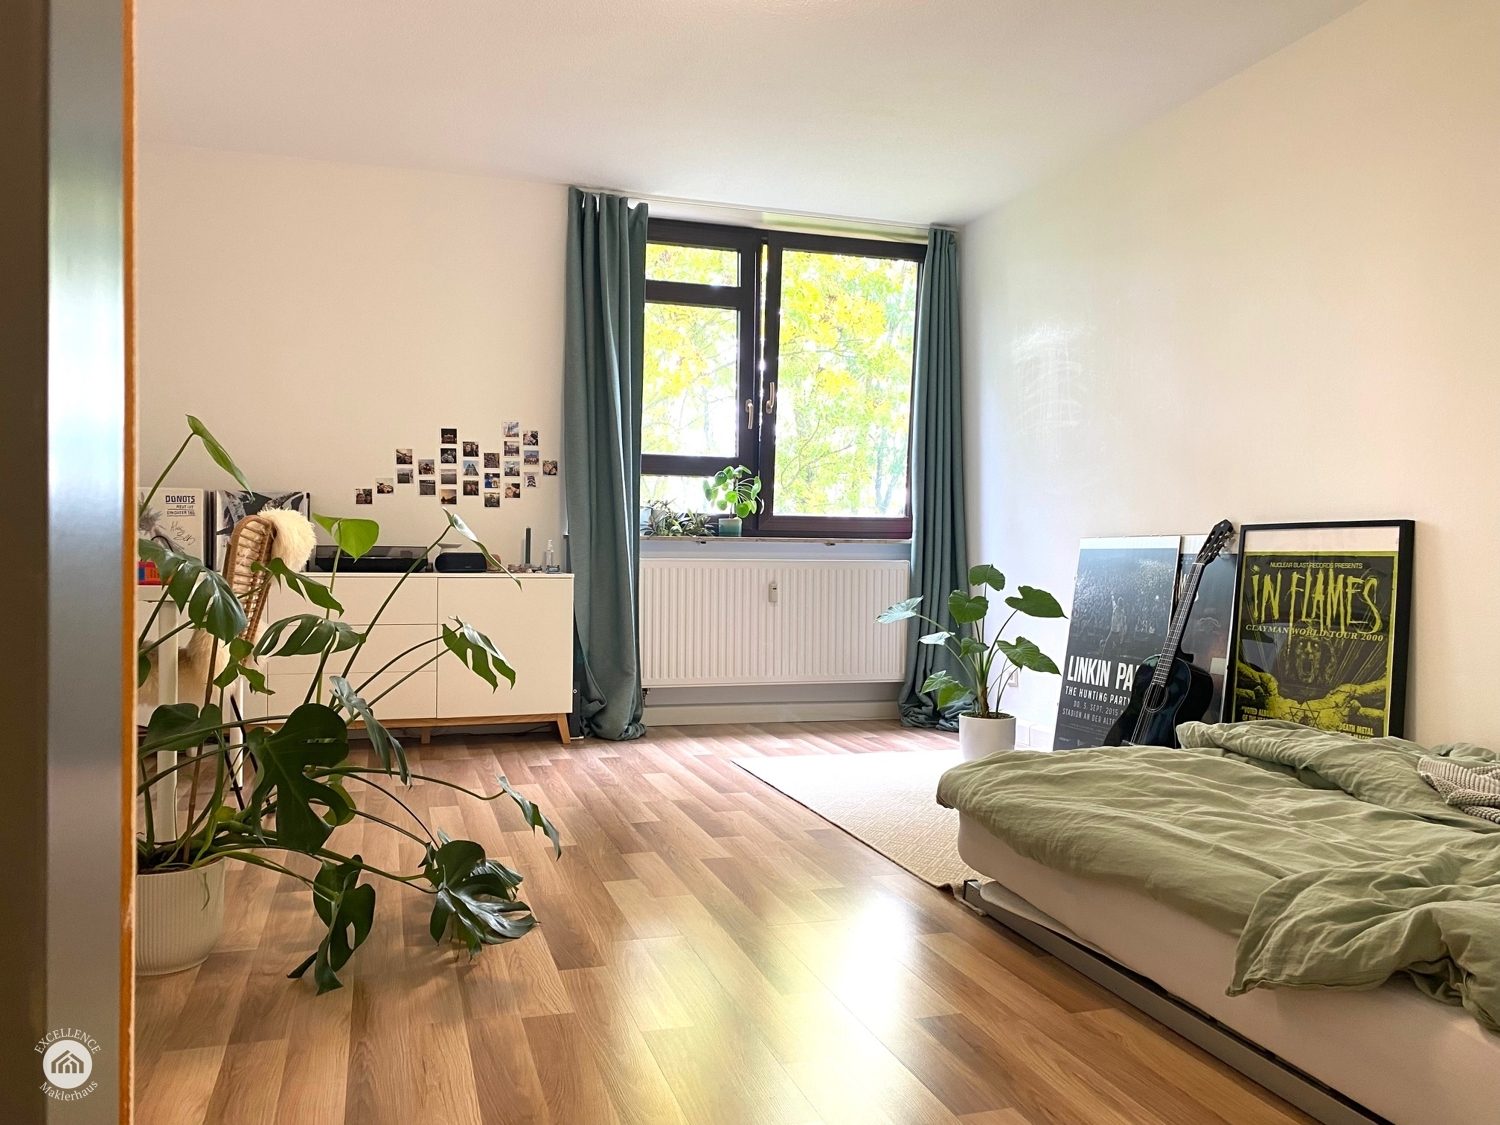 Immobilienangebot - Ulm - Alle - wunderschöne 1-Zimmer-Wohnung am Hochsträß mit toller Anbindung und traumhafter Aussicht